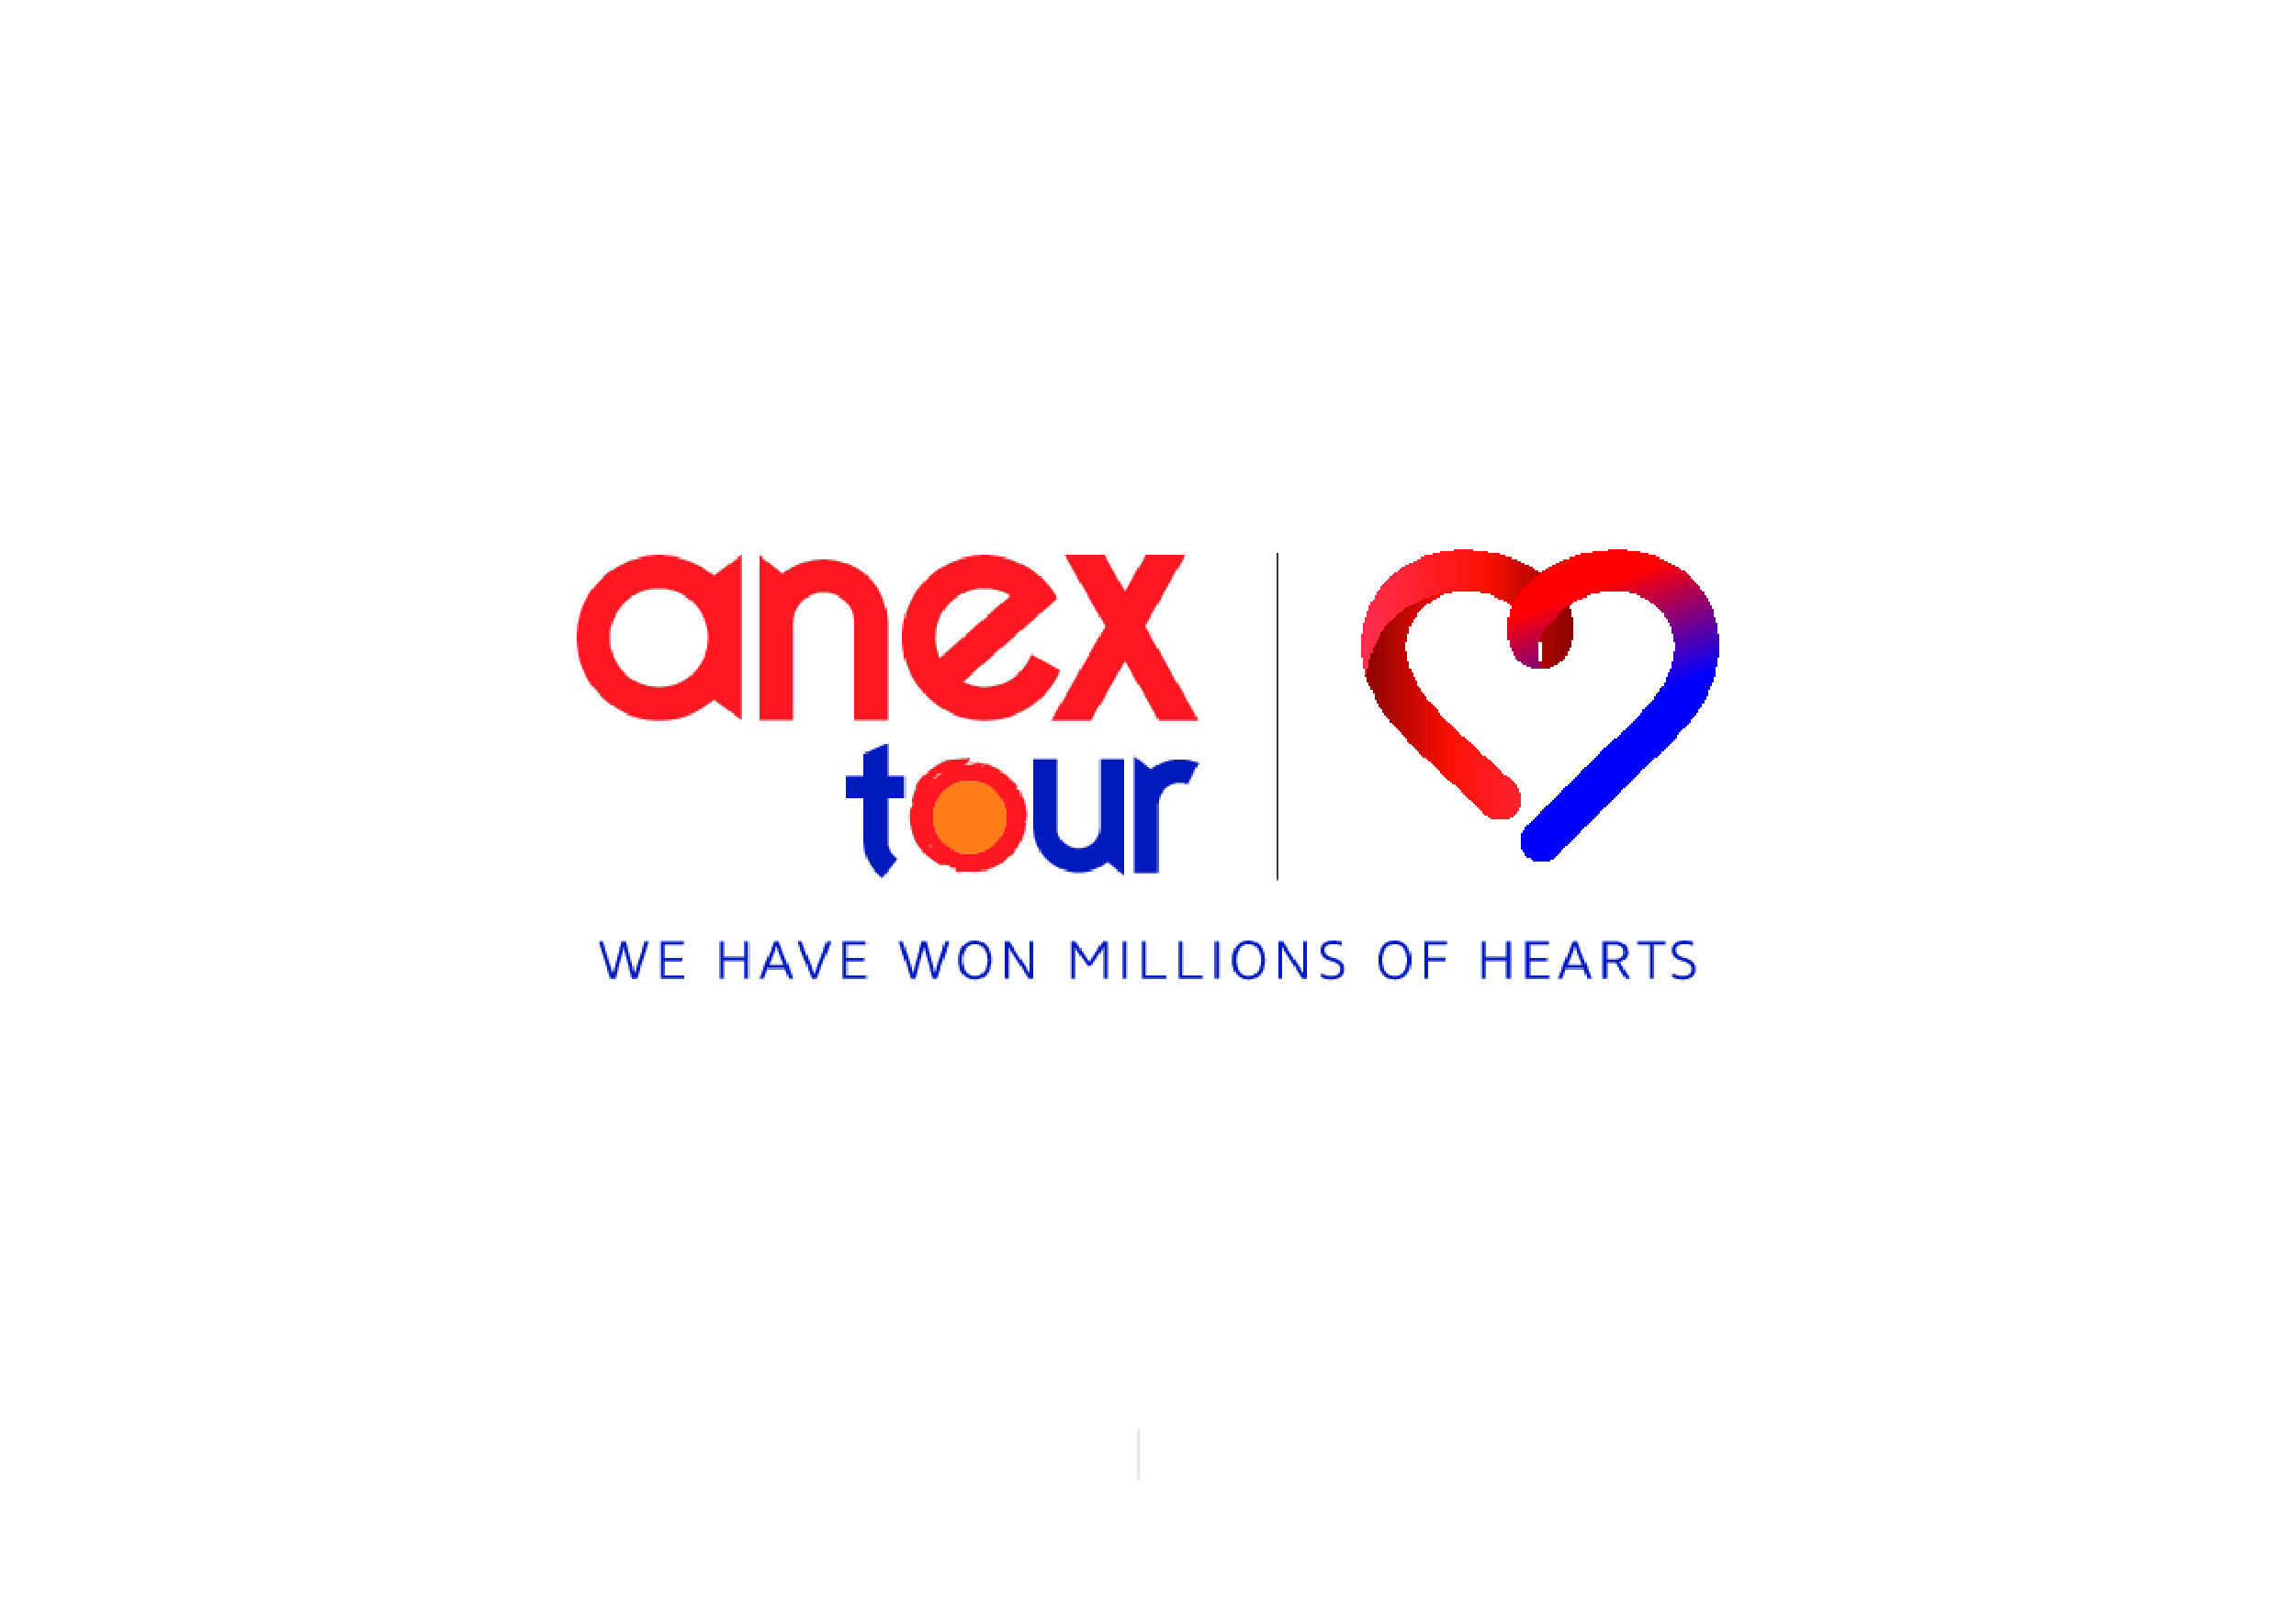 ANEX Tour